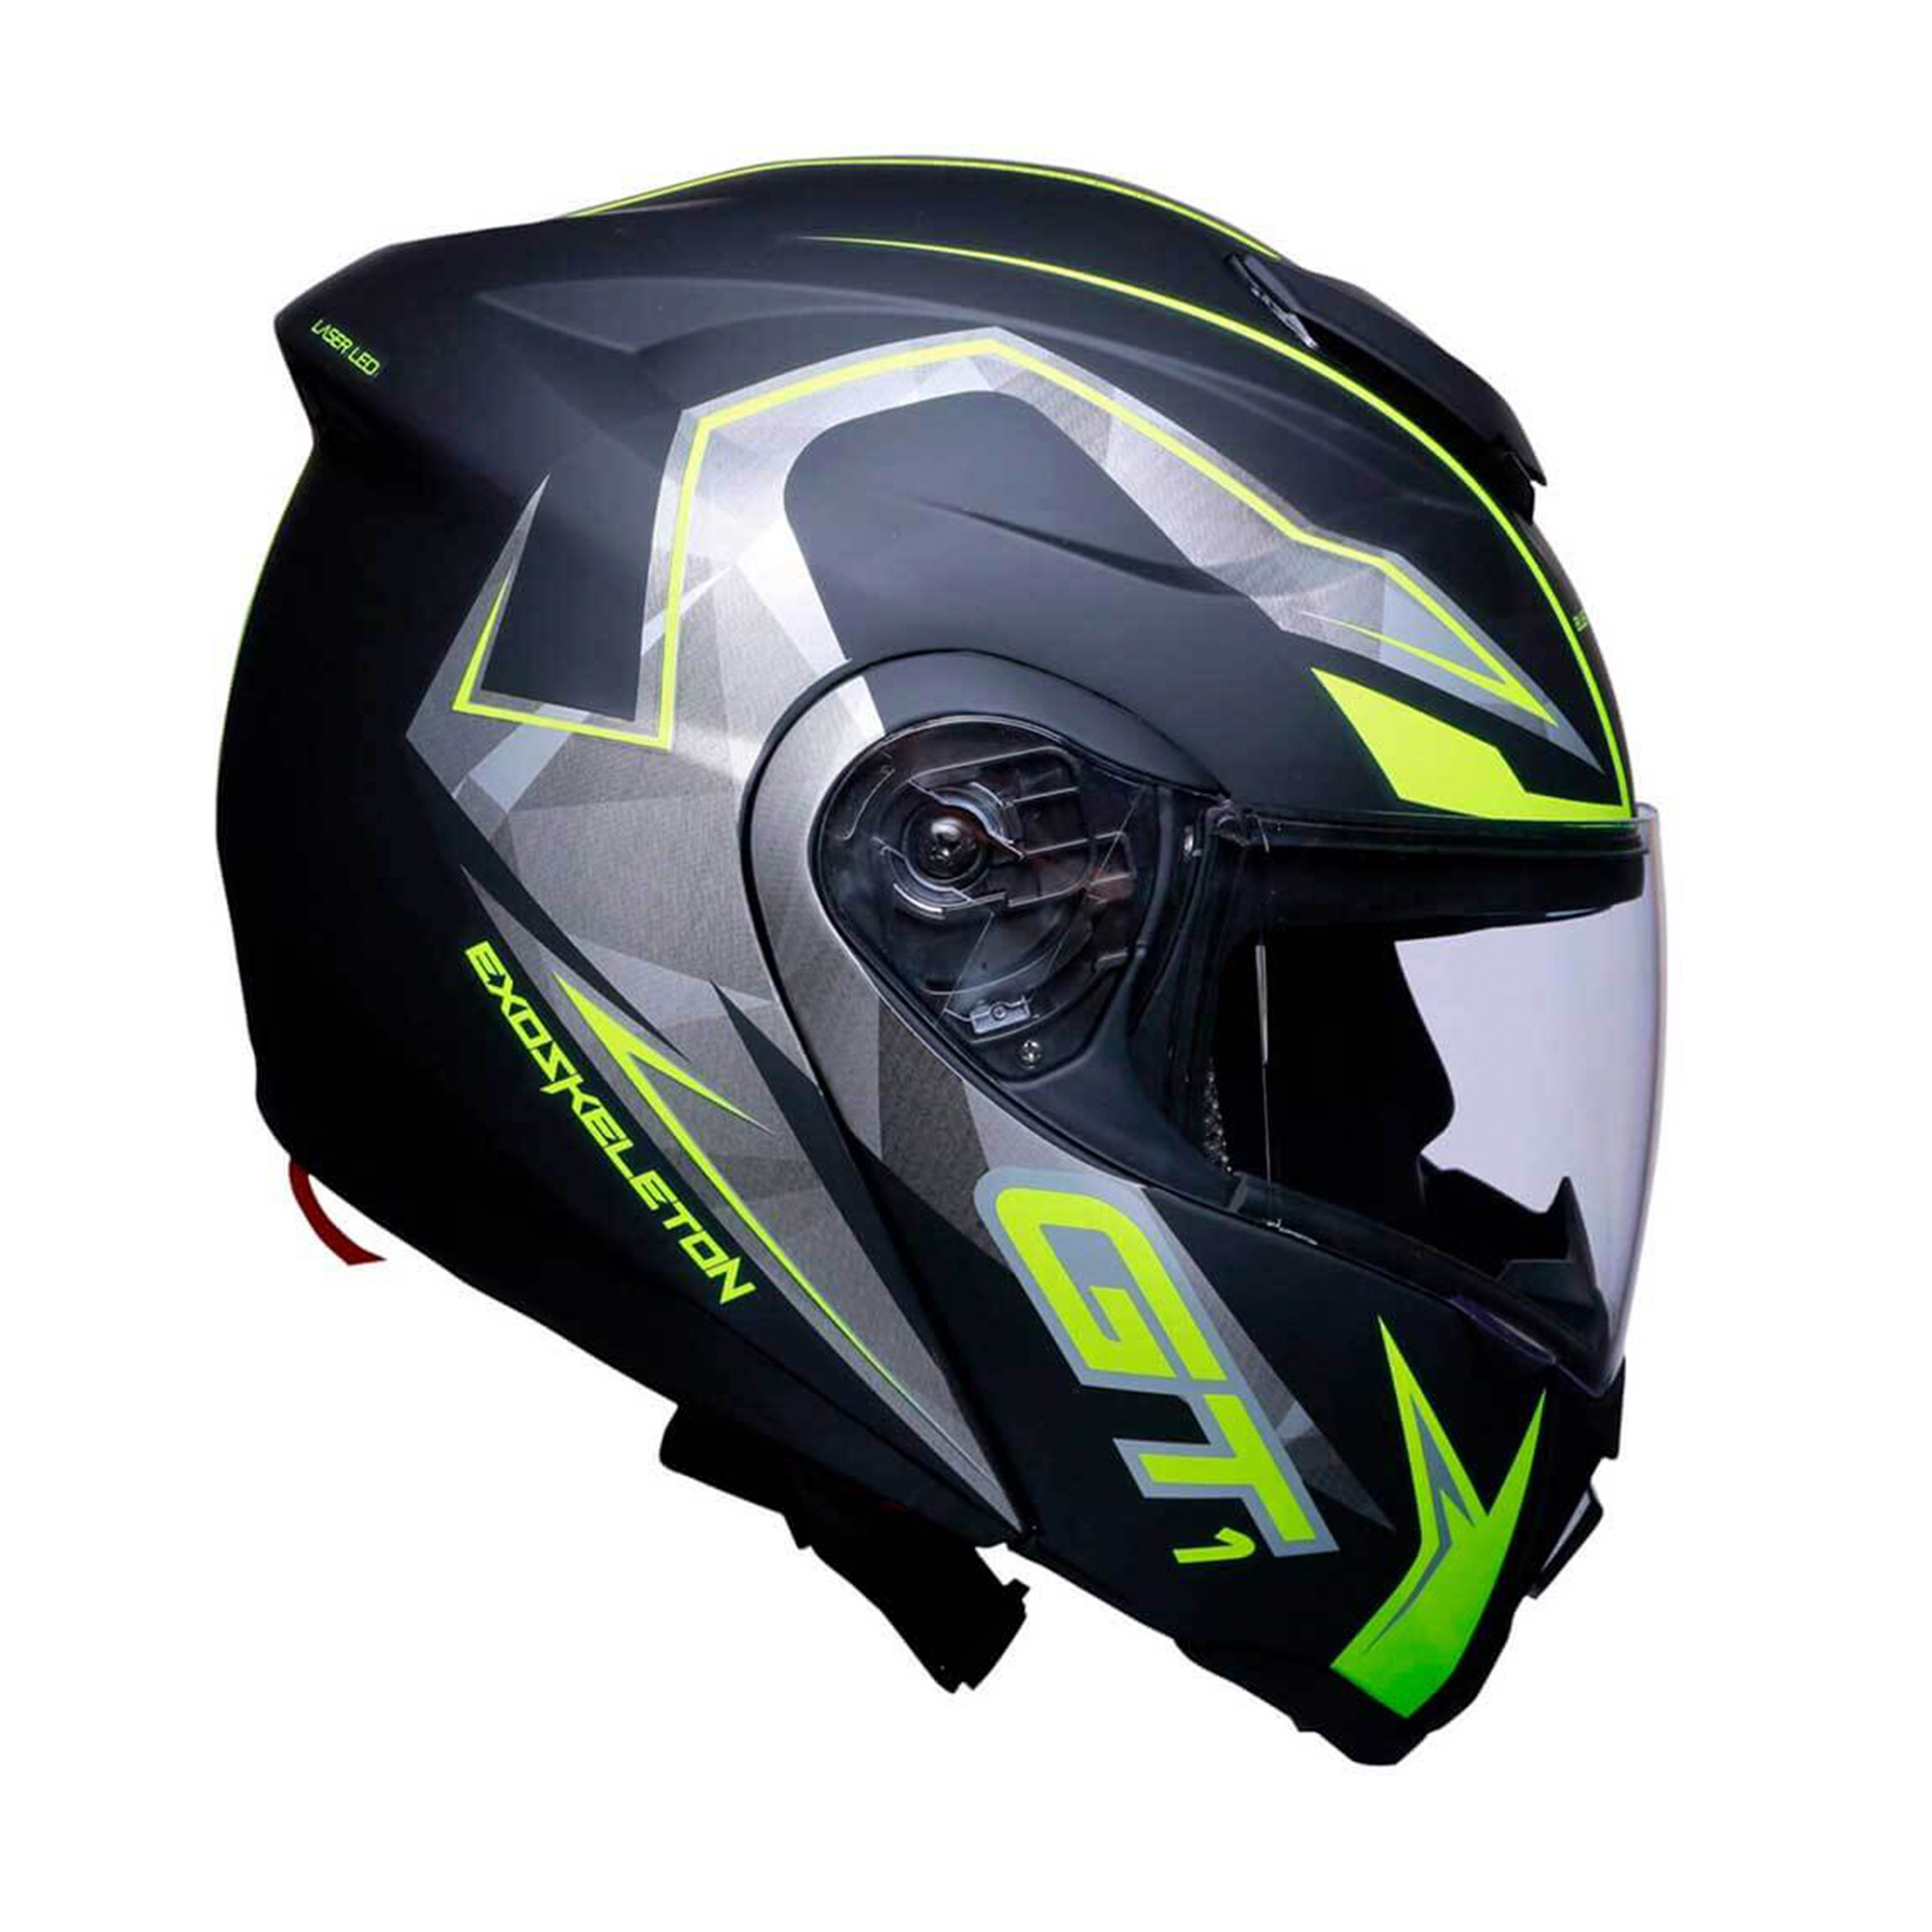 Bicimex Detalles Casco para motociclista talla M abatible con Bluetooth  Ventec exoskeleton Negro / Amarillo GT1 Vento